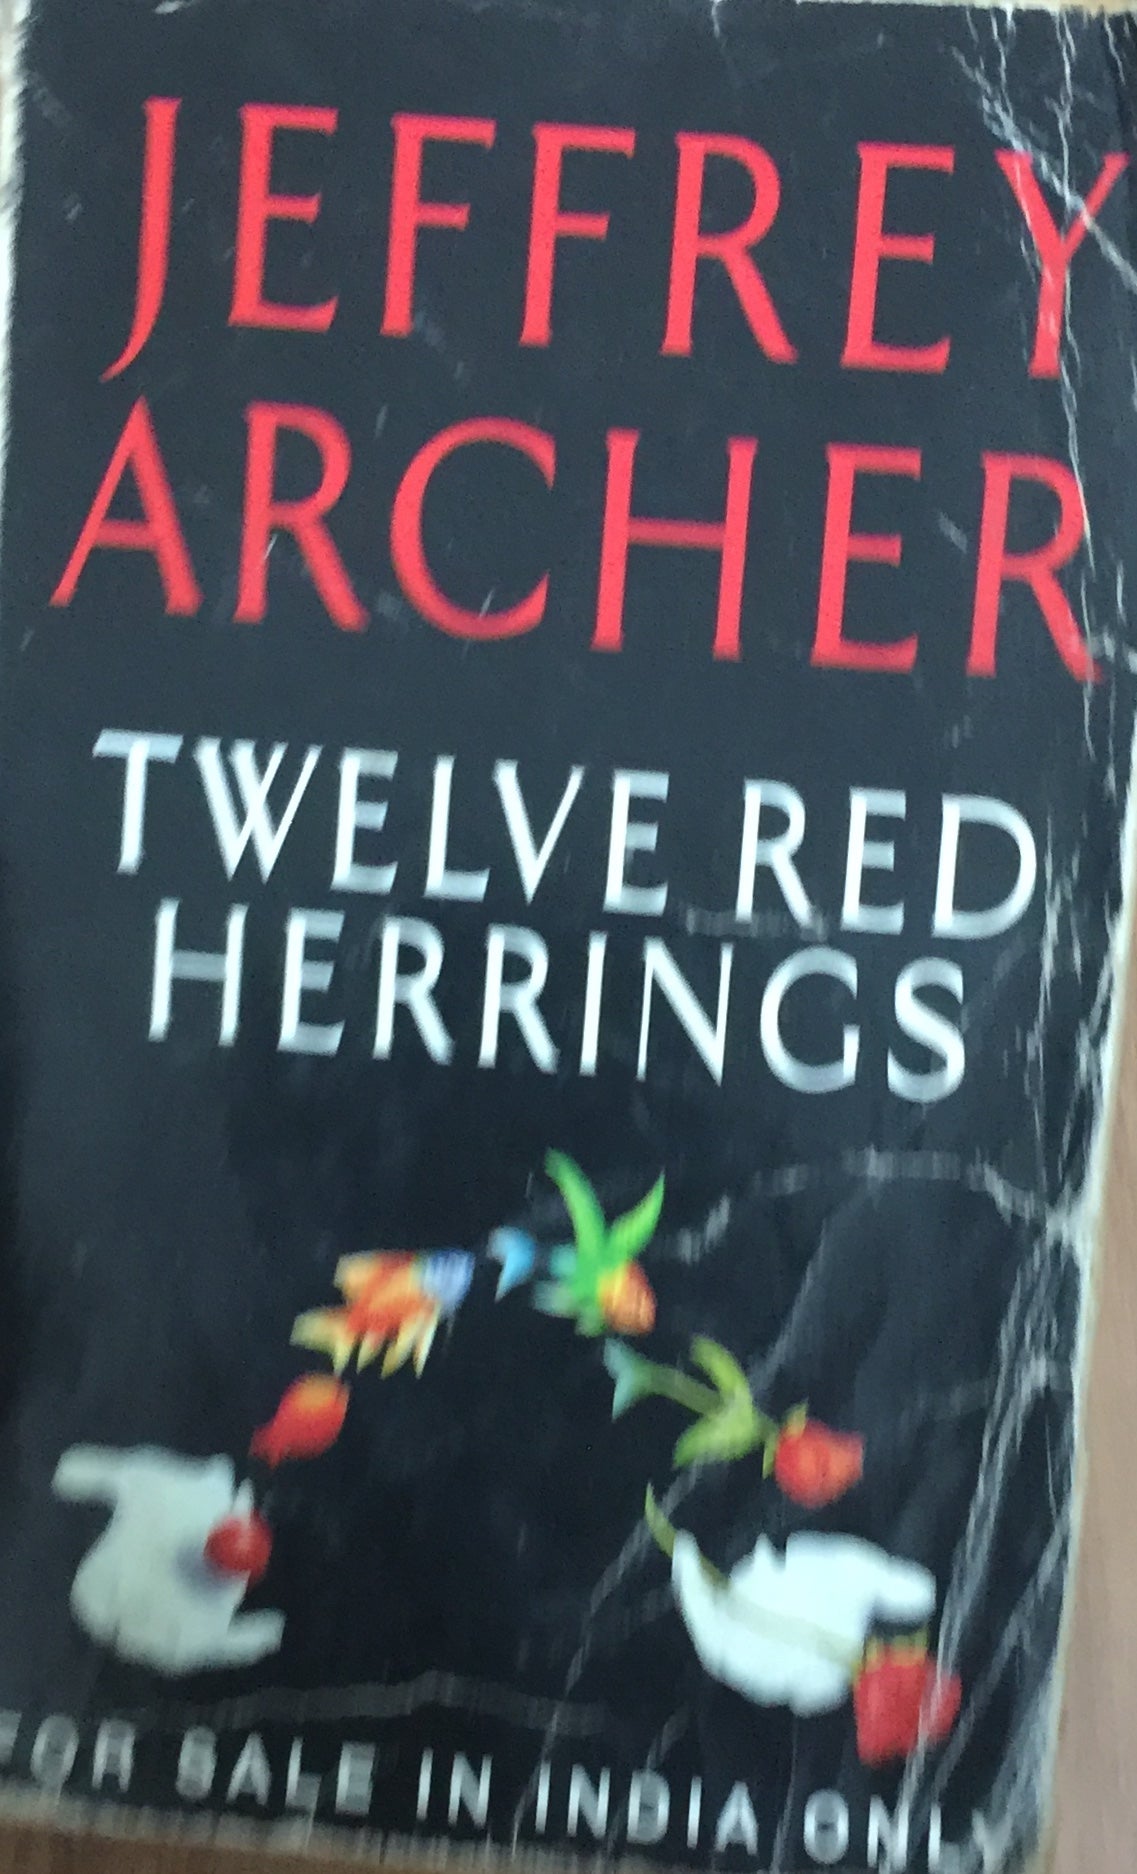 Twelve Red Herrings by Jeffrey Archer